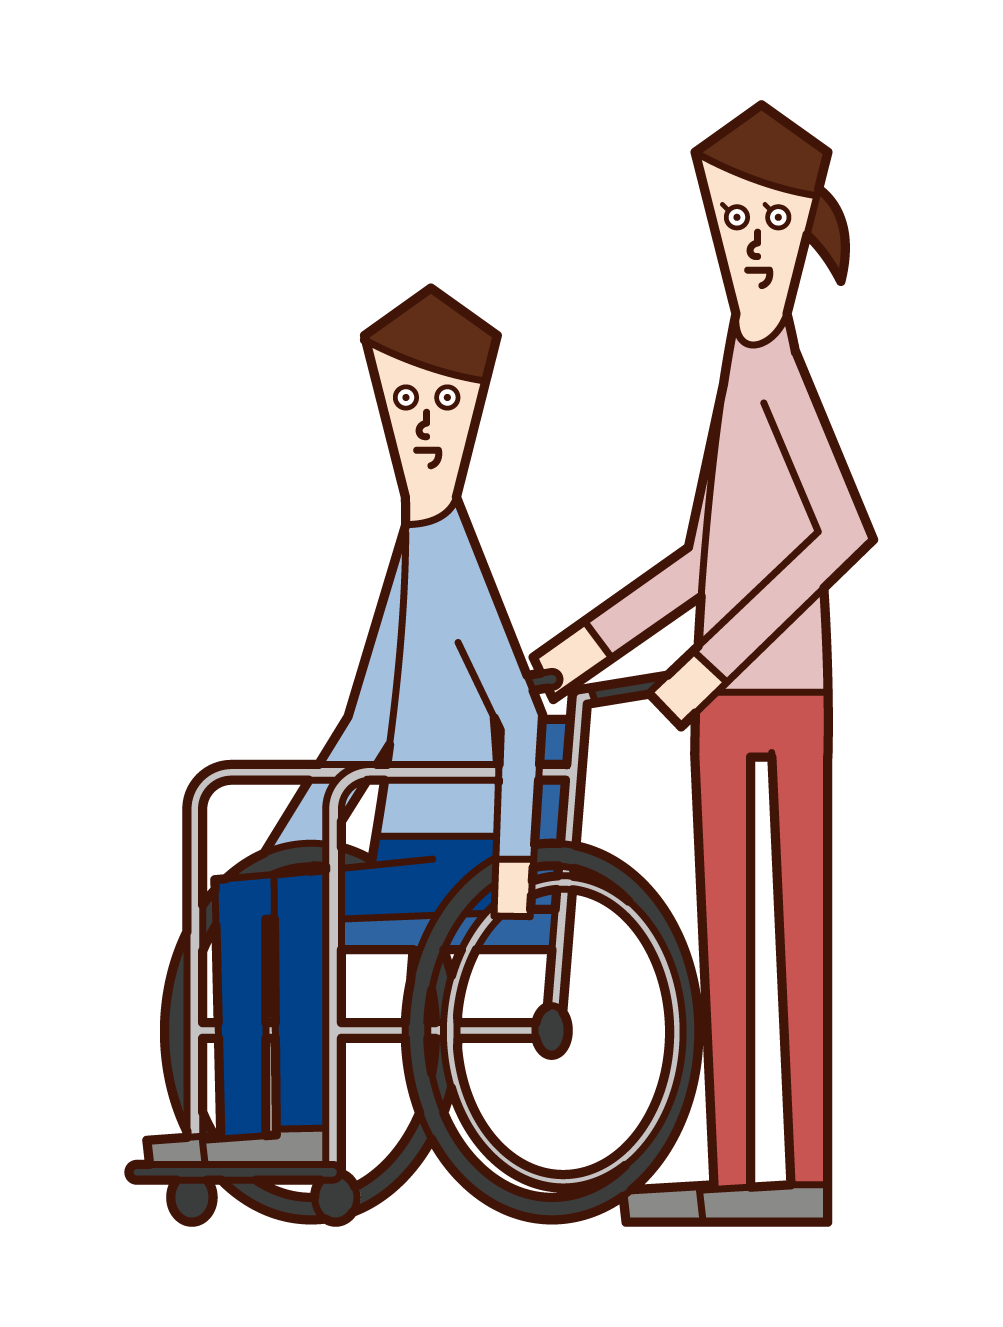 車椅子に乗る人 男性 と押す人 女性 のイラスト フリーイラスト素材 Kukukeke ククケケ